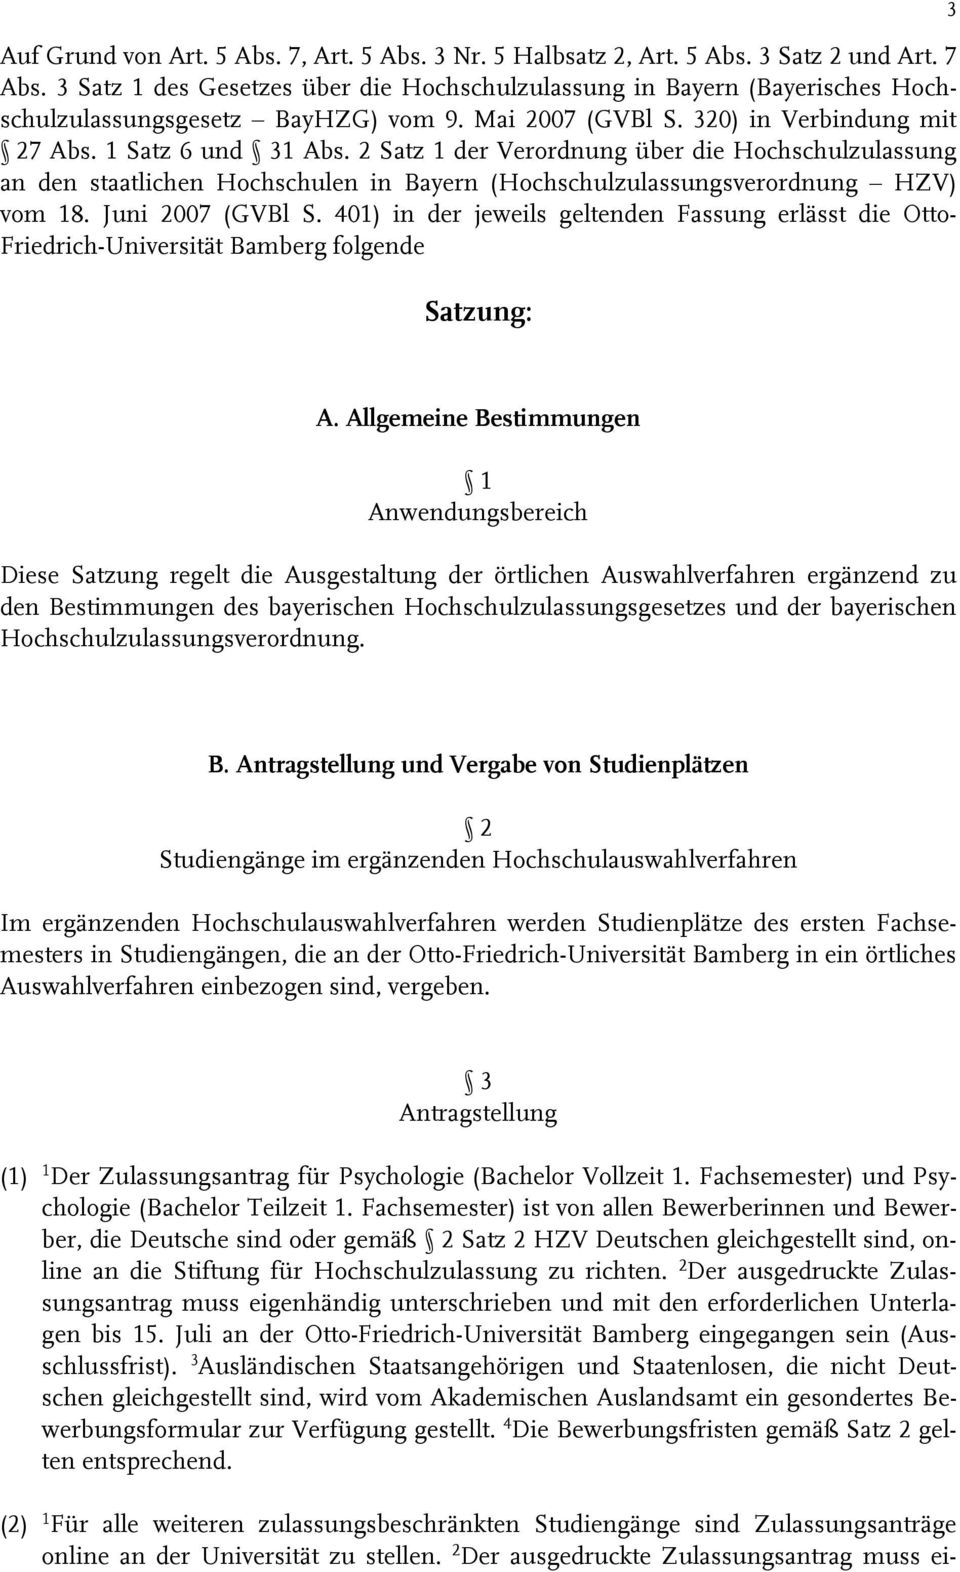 2 Satz 1 der Verordnung über die Hochschulzulassung an den staatlichen Hochschulen in Bayern (Hochschulzulassungsverordnung HZV) vom 18. Juni 2007 (GVBl S.